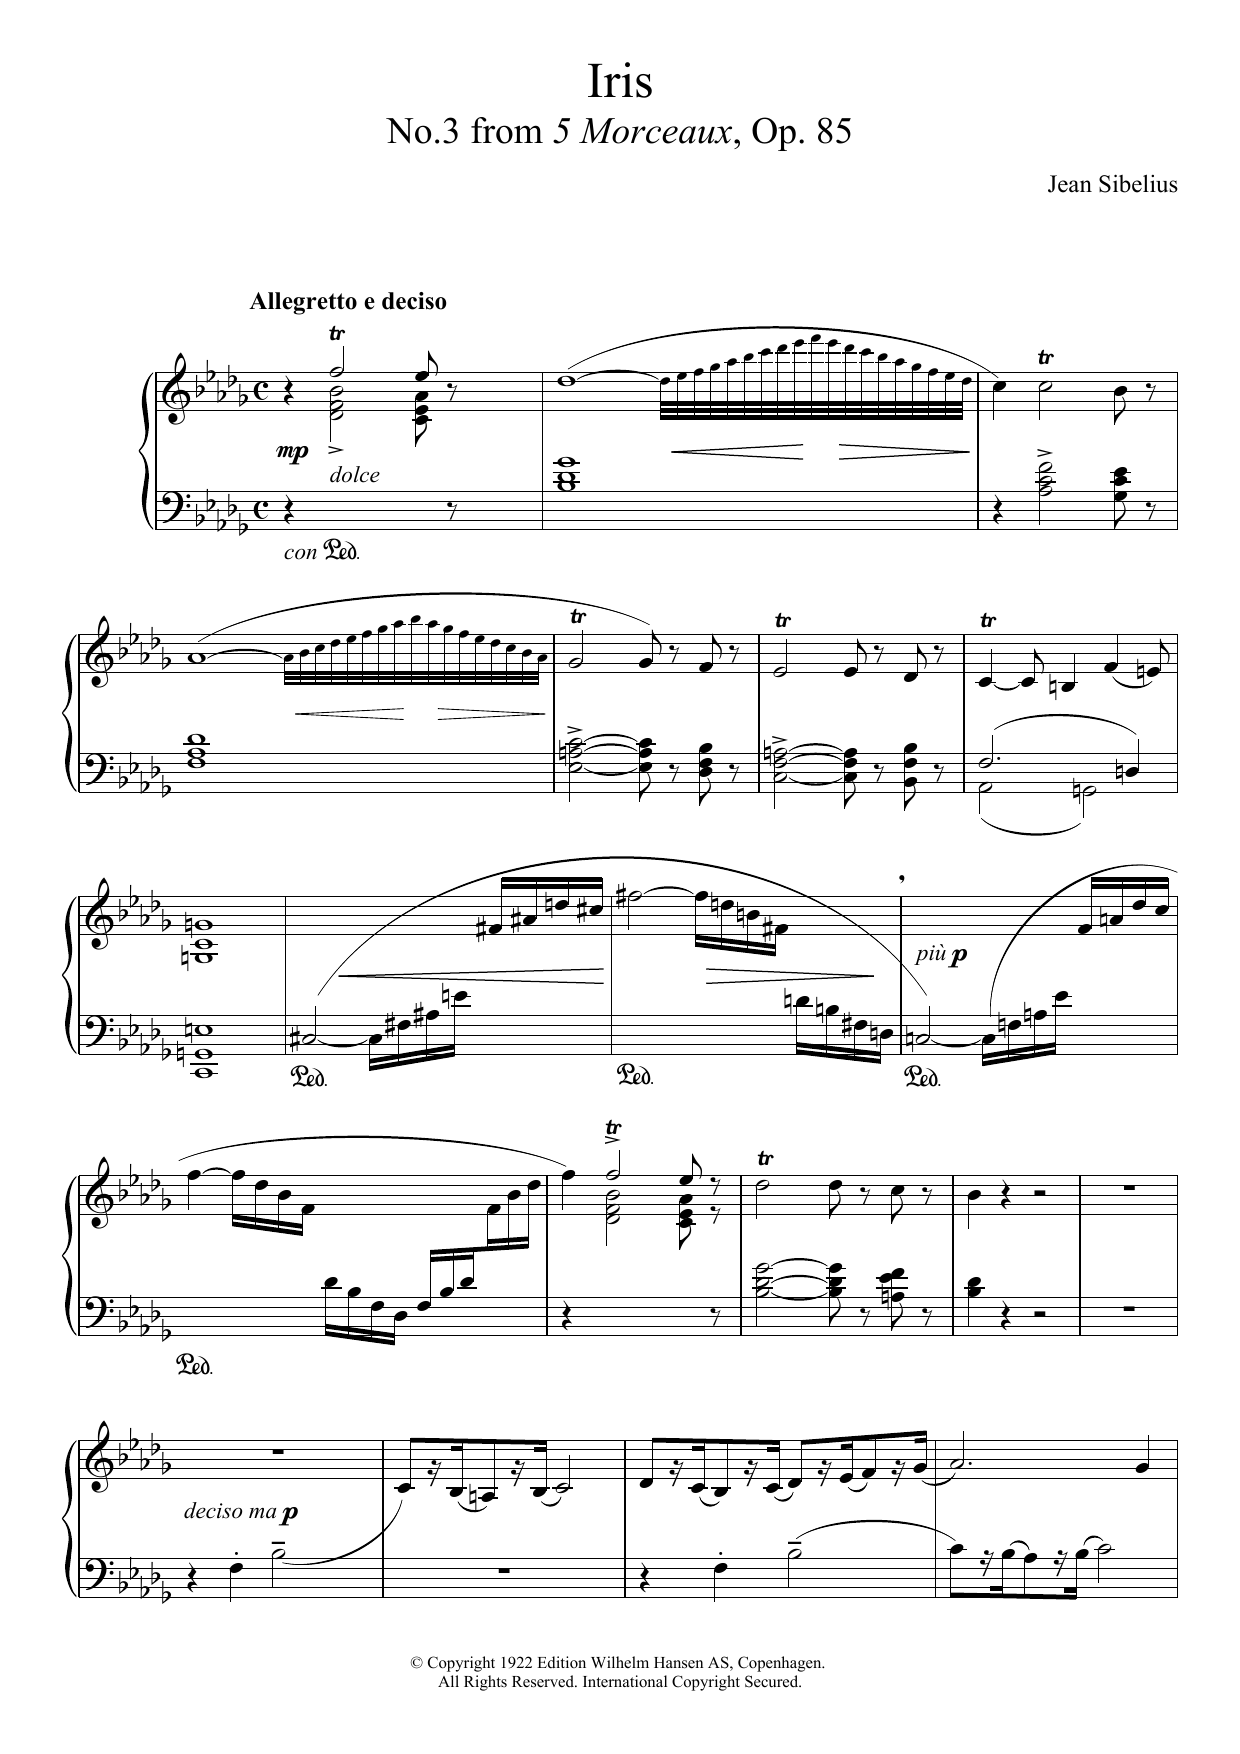 Download Jean Sibelius 5 Morceaux, Op.85 - III. Iris Sheet Music